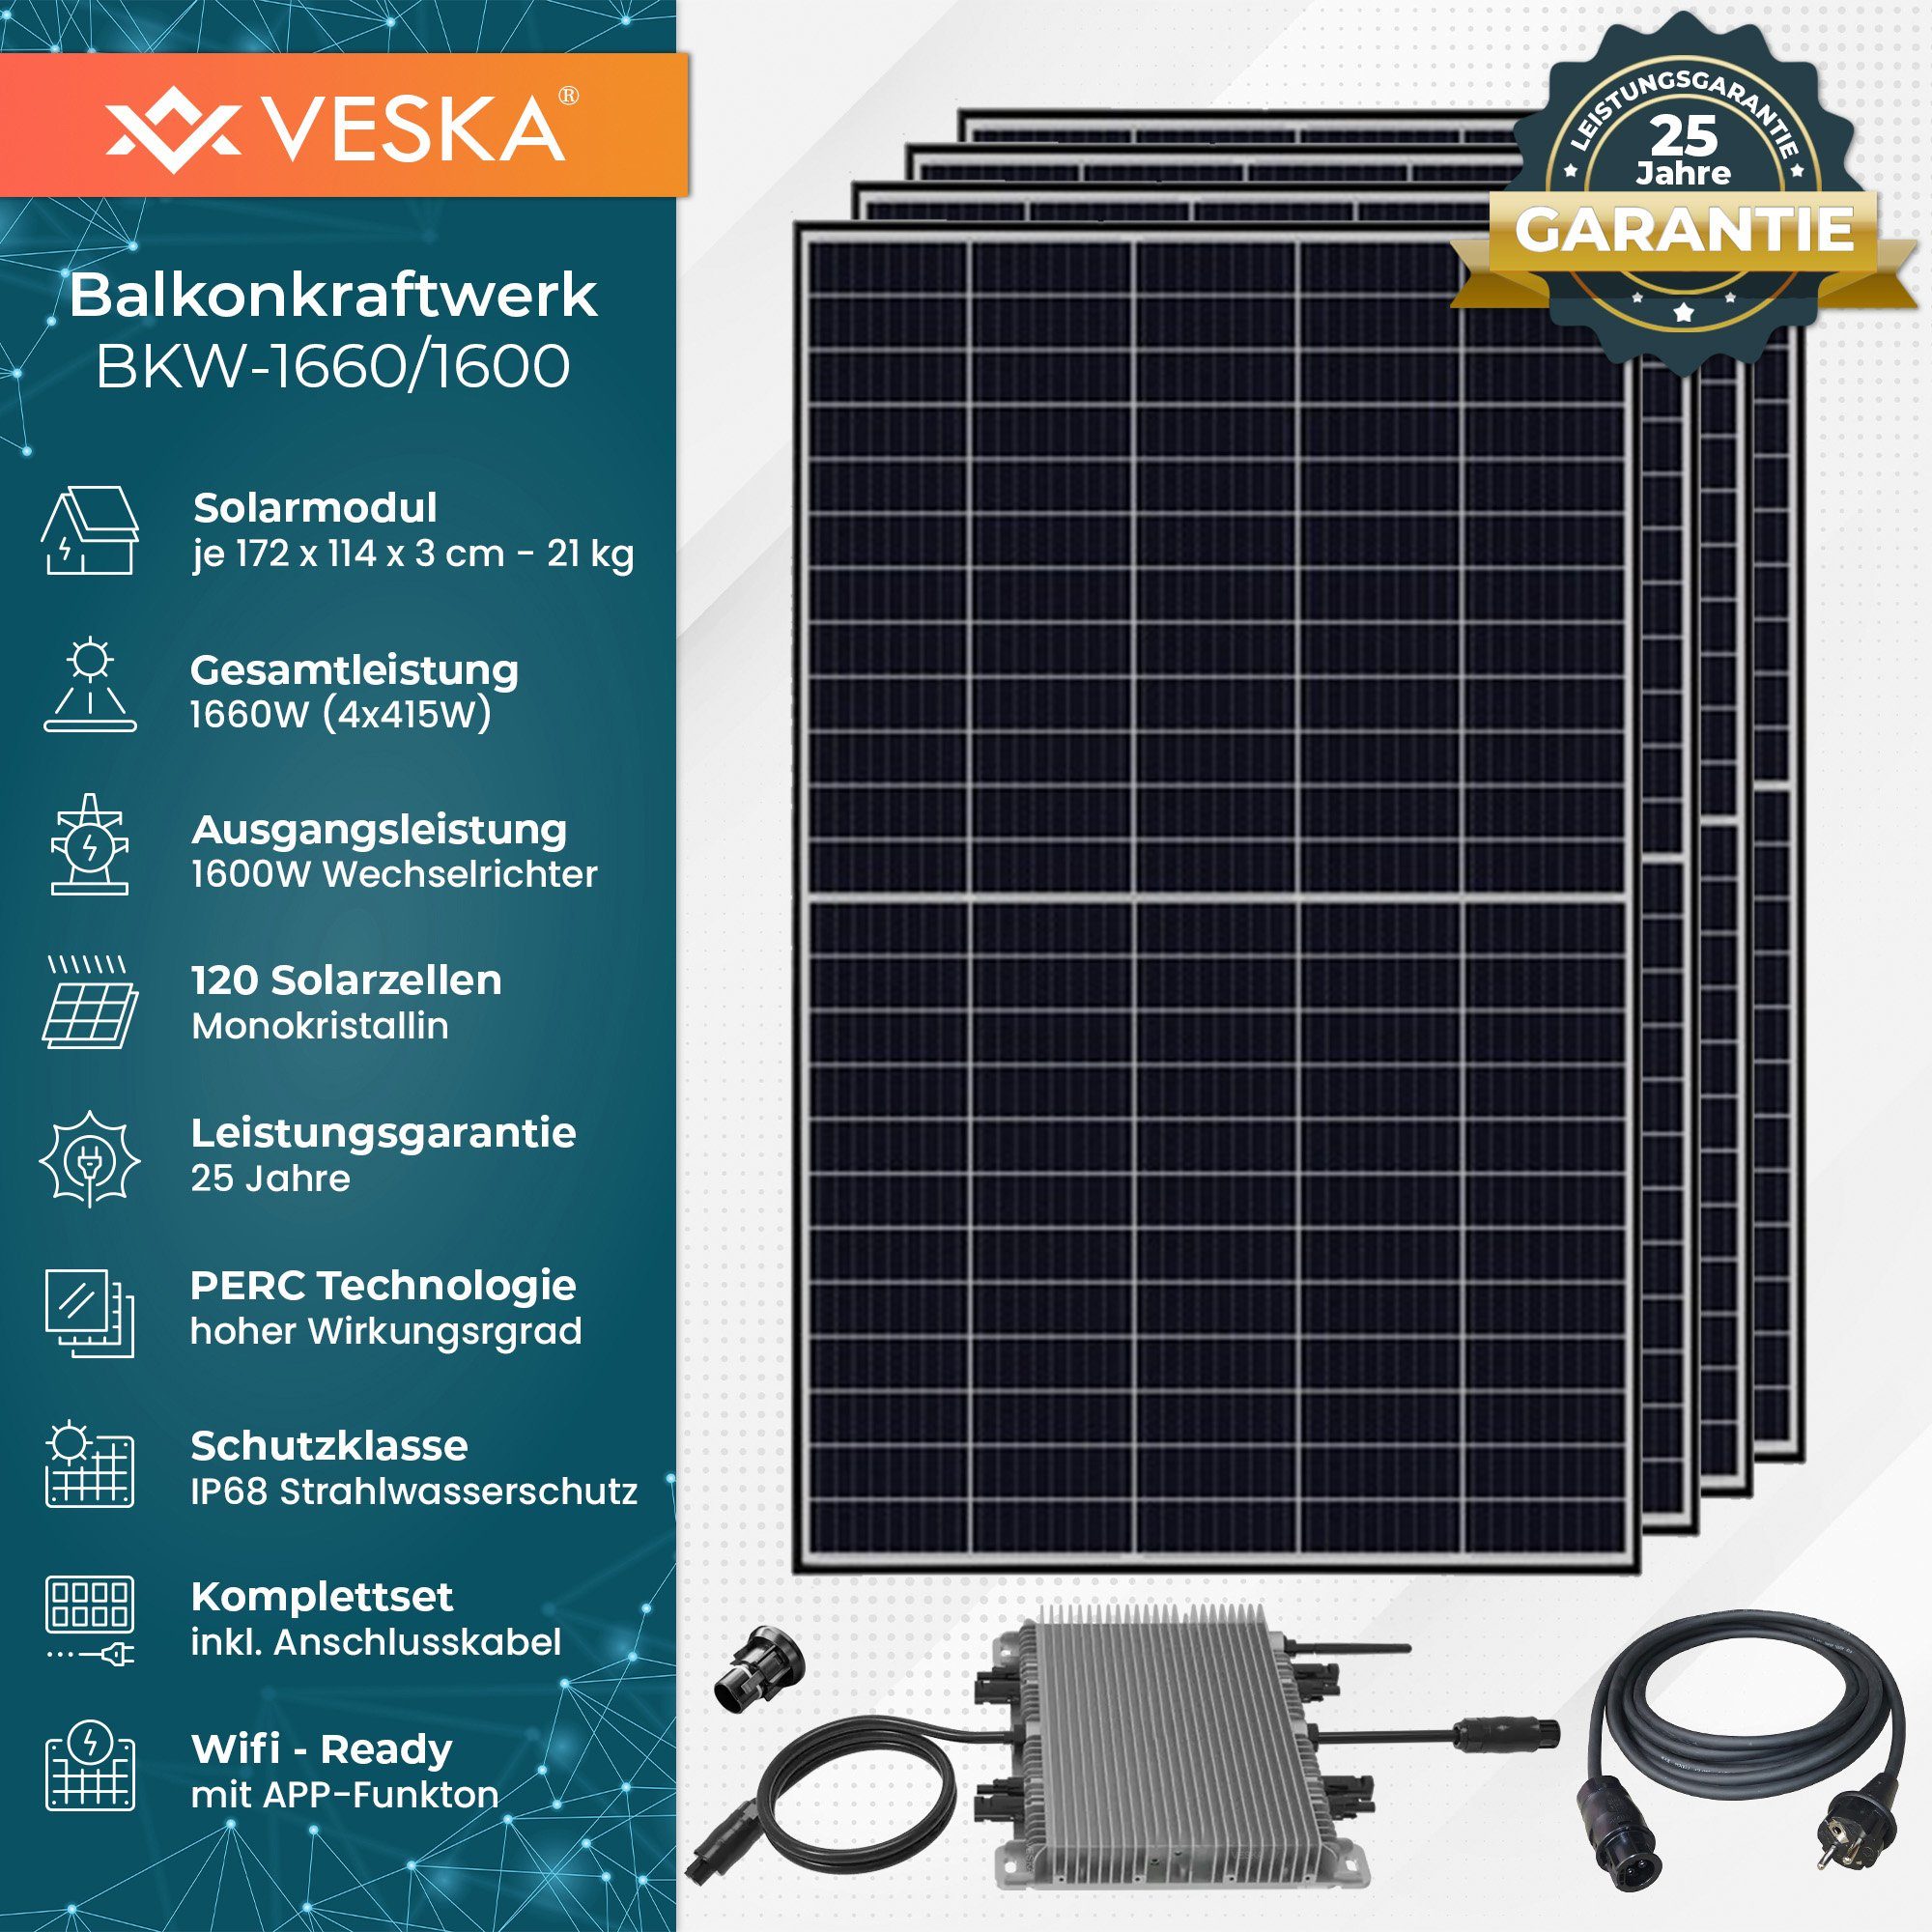 Mini-PV PERC Watt Technologie, WIFI), / Anlage, VESKA 1660 1600,00 1600 Balkonkraftwerk Schwarz Photovoltaik (Komplettset, W, Antireflexbeschichtung Solaranlage